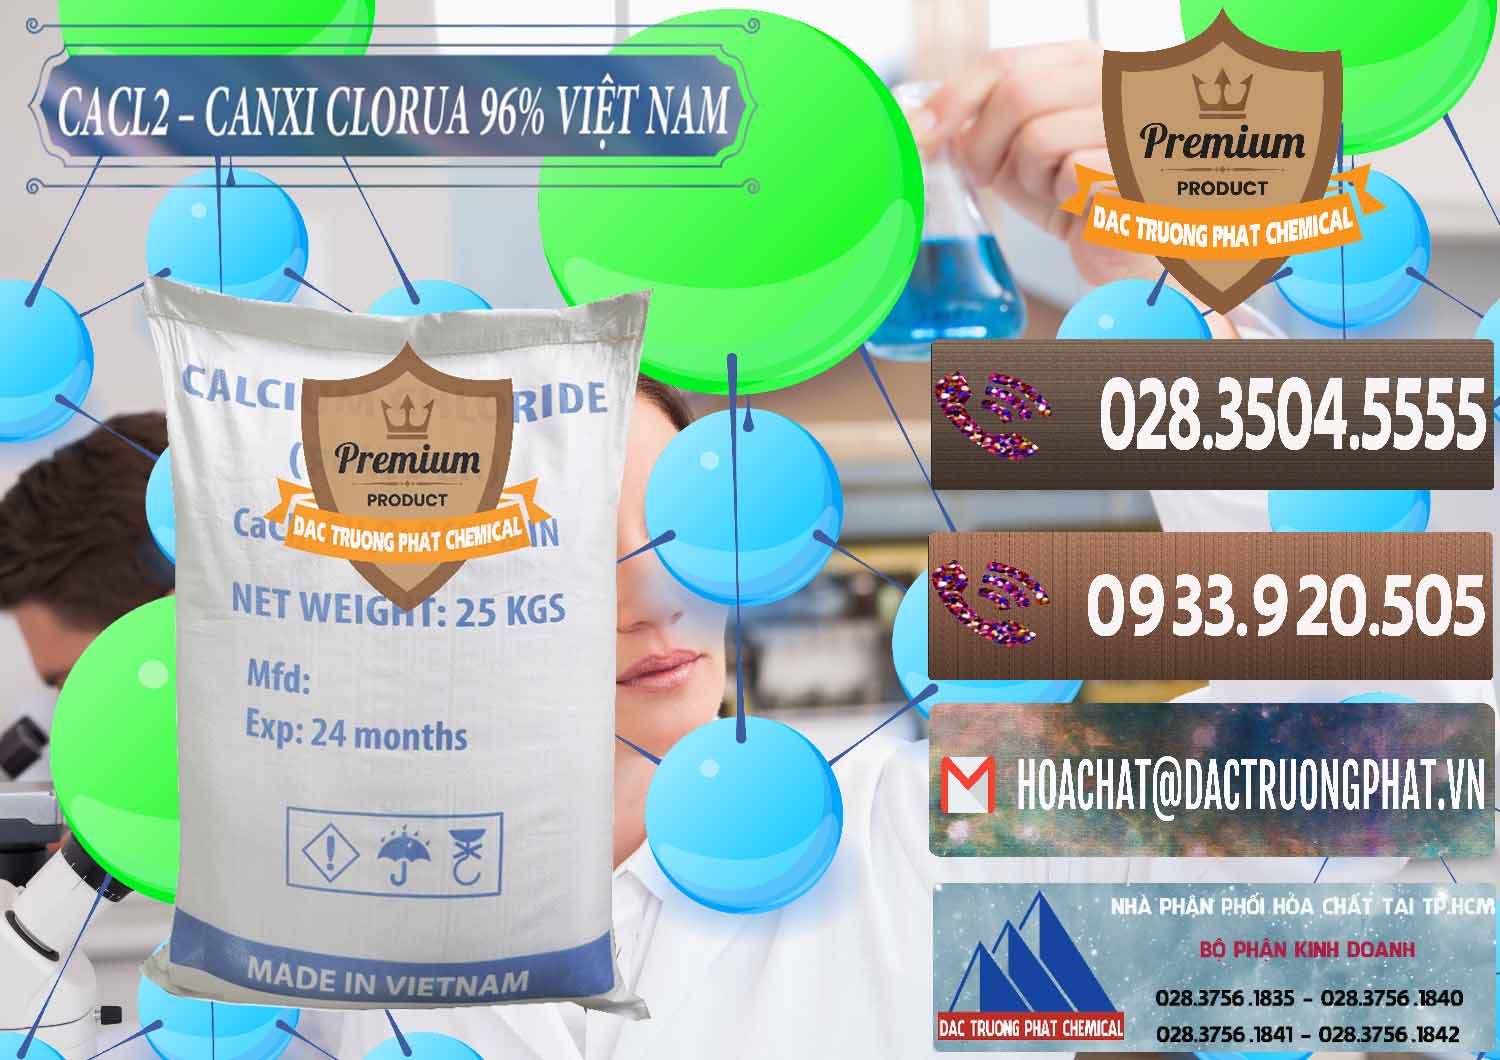 Cty bán & cung cấp CaCl2 – Canxi Clorua 96% Việt Nam - 0236 - Đơn vị cung ứng ( bán ) hóa chất tại TP.HCM - hoachatviet.net